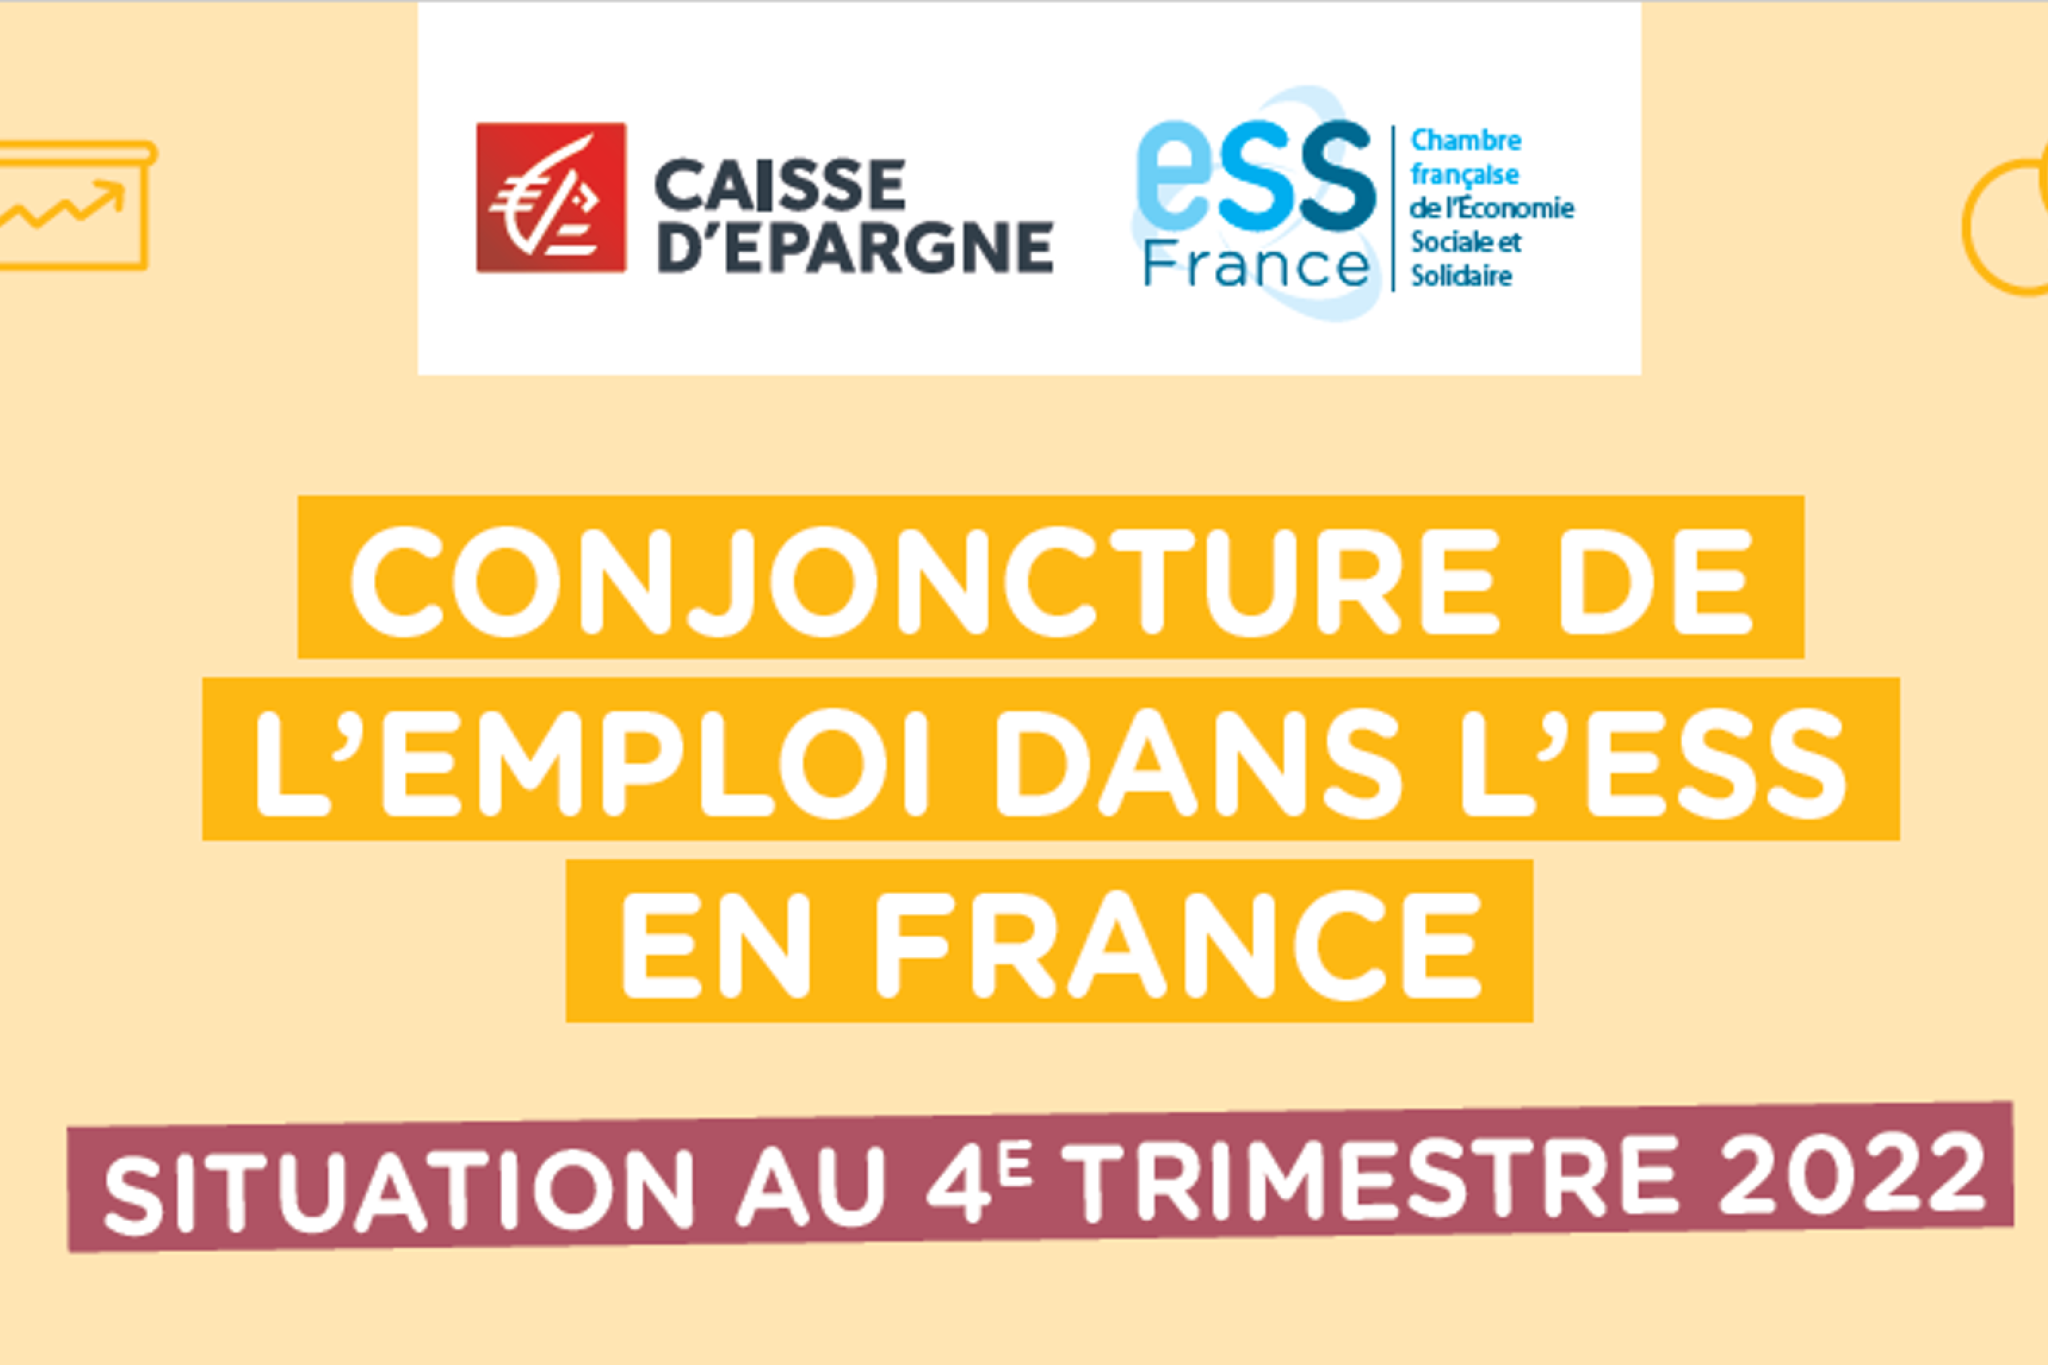 Visuel : Conjoncture de l'emploi dans l'ESS en France, situation au 4e trimestre 2022